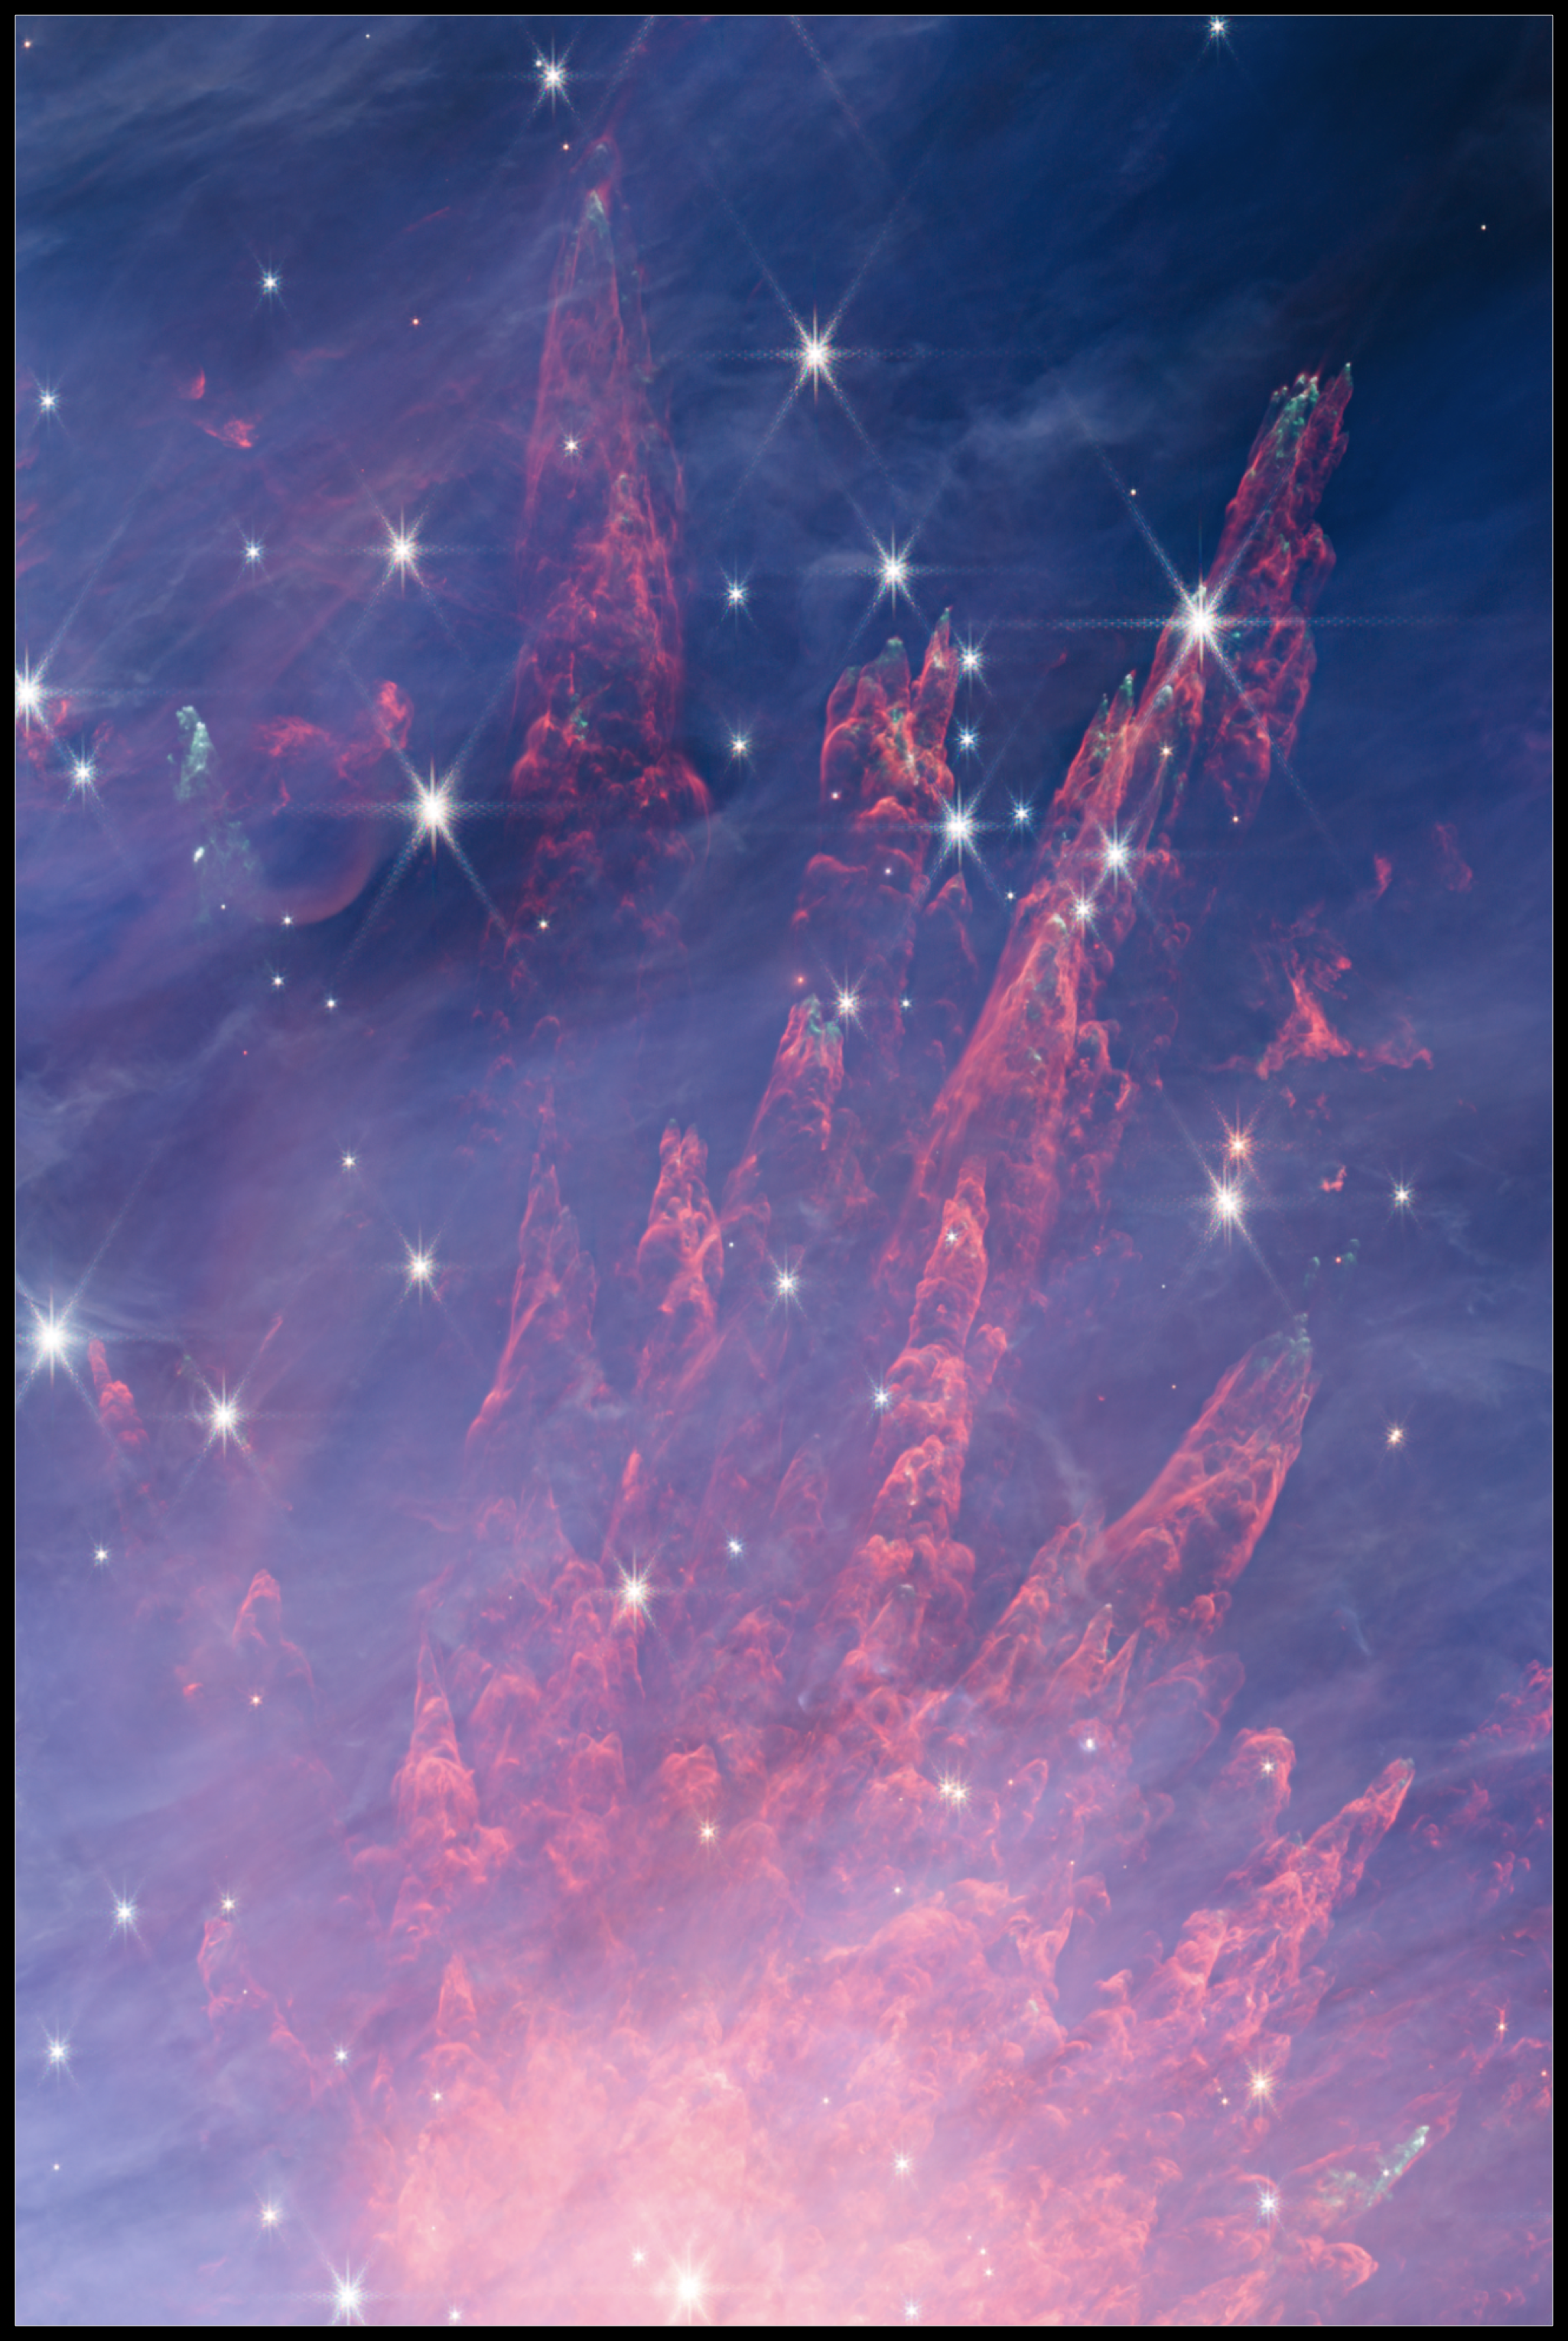 Na ilustracji (10): Kosmiczne fajerwerki wyglądające też jak „palce eksplozyjne” w obszarze narodzin gwiazd BN-KL będącym częścią Obłoku Molekularnego Oriona OMC-1 – na północny zachód od Gromady Trapez. Jest to fragment mozaiki zdjęć centralnej części Mgławicy Oriona (M42) uzyskanej z obserwacji Teleskopem Webba w bliskiej podczerwieni. Widać wiele „palców” w kolorze czerwonym, które są wzbudzonym przez fale uderzeniowe gazem molekularnym rozszerzającym się od dołu zdjęcia do góry w prawo. Każdy z tych „palców” składa się z serii jasnych luków emisyjnych podobnych do fal łukowych rozchodzących się za wierzchołkami, które często świecących na zielono. Źródło (CC BY-SA 3.0 IGO): NASA, ESA, CSA / M. McCaughrean, S. Pearson